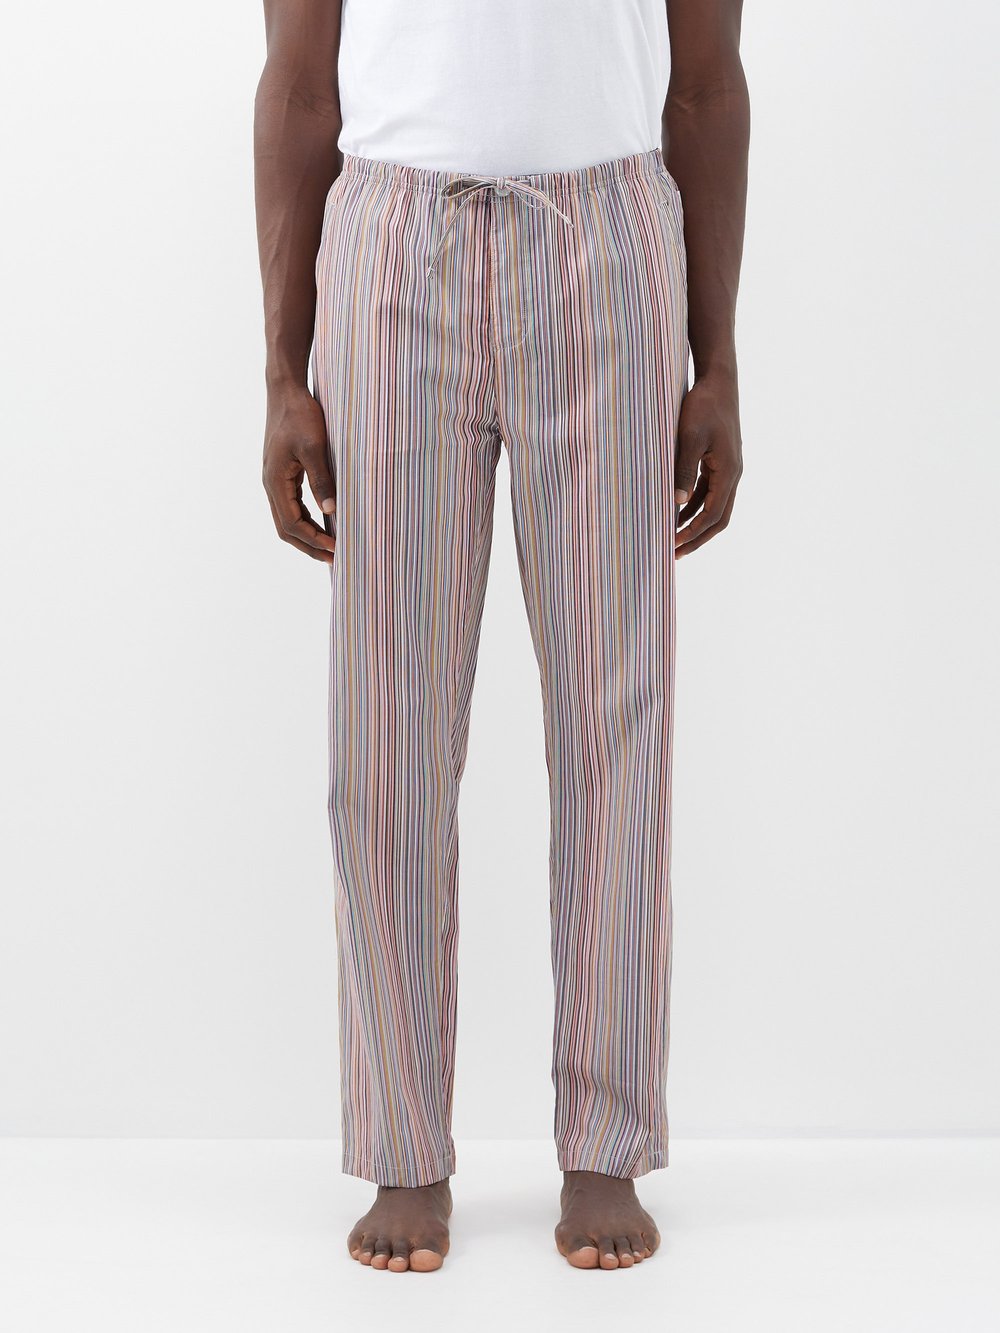 Пижамные брюки из хлопка с фирменными полосками Paul Smith, мультиколор комплект из семи боксеров с фирменными полосками paul smith